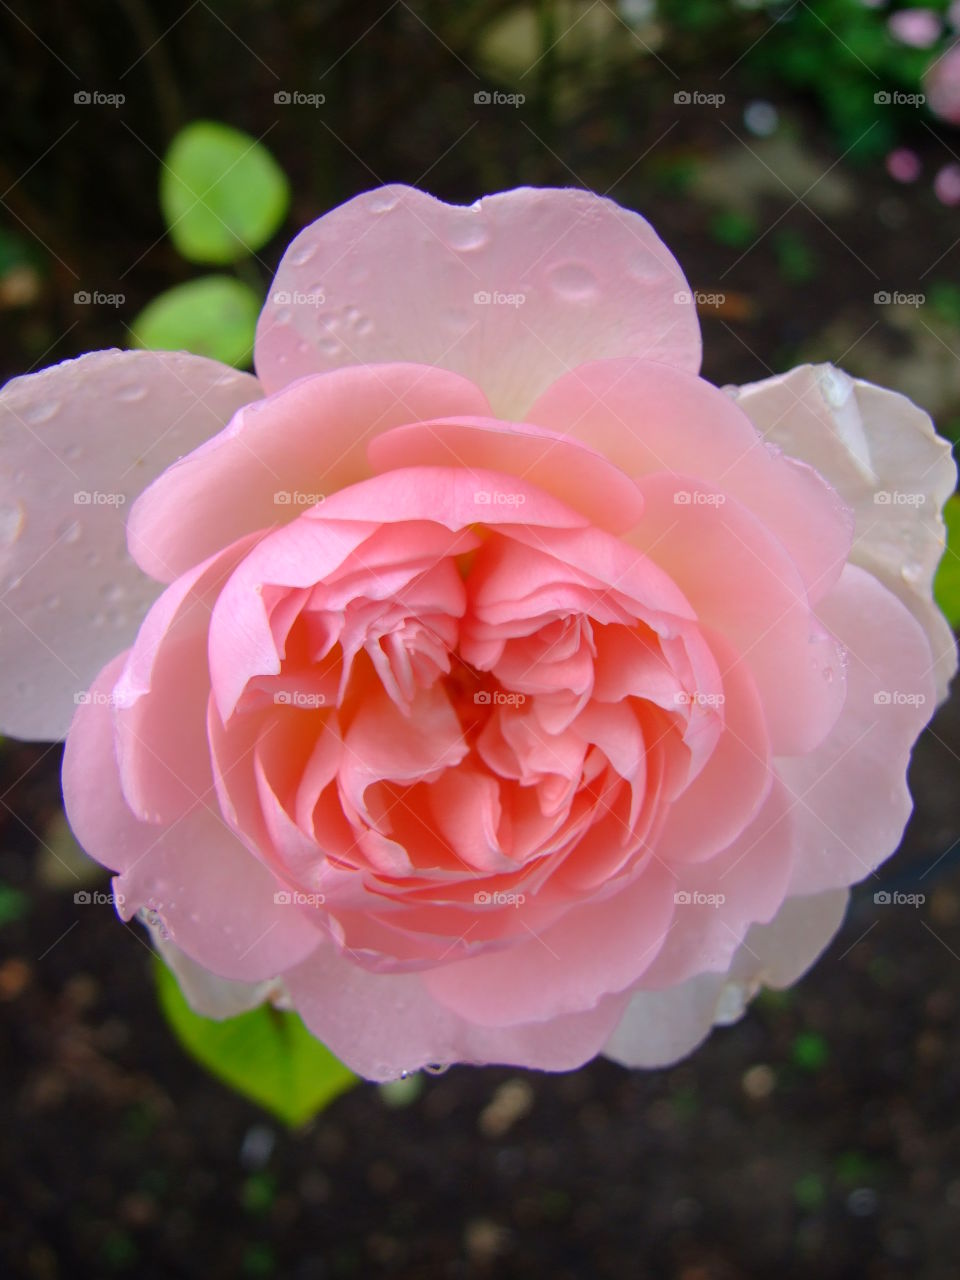 Big, pink Rose